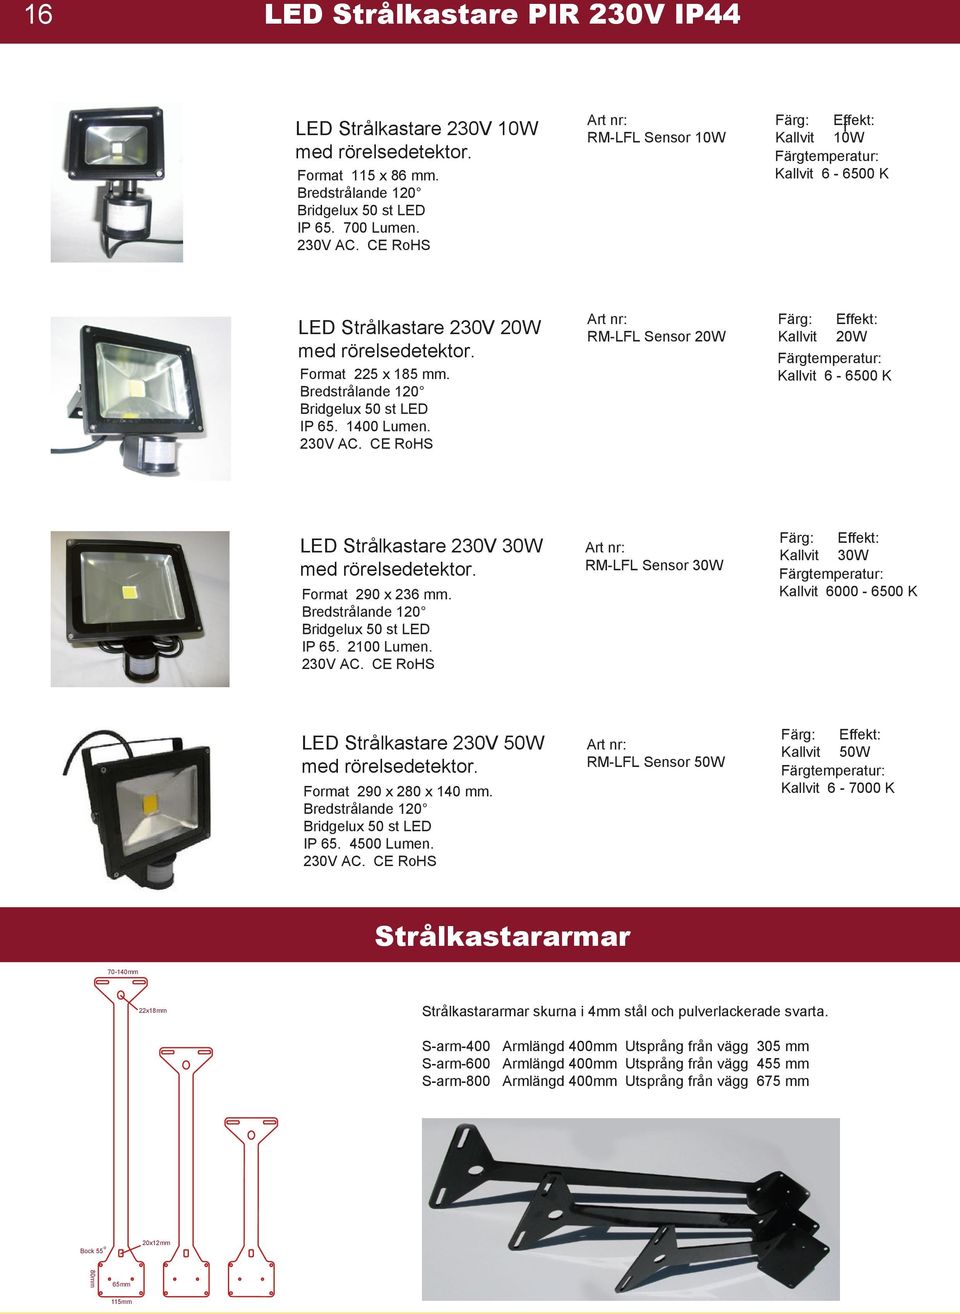 CE RoHS RM-LFL Sensor 20W Färg: Kallvit Effekt: 20W Kallvit 6-6500 K LED Strålkastare 230V 30W med rörelsedetektor. Format 290 x 236 mm. Bredstrålande 120 IP 65. 2100 Lumen. 230V AC.